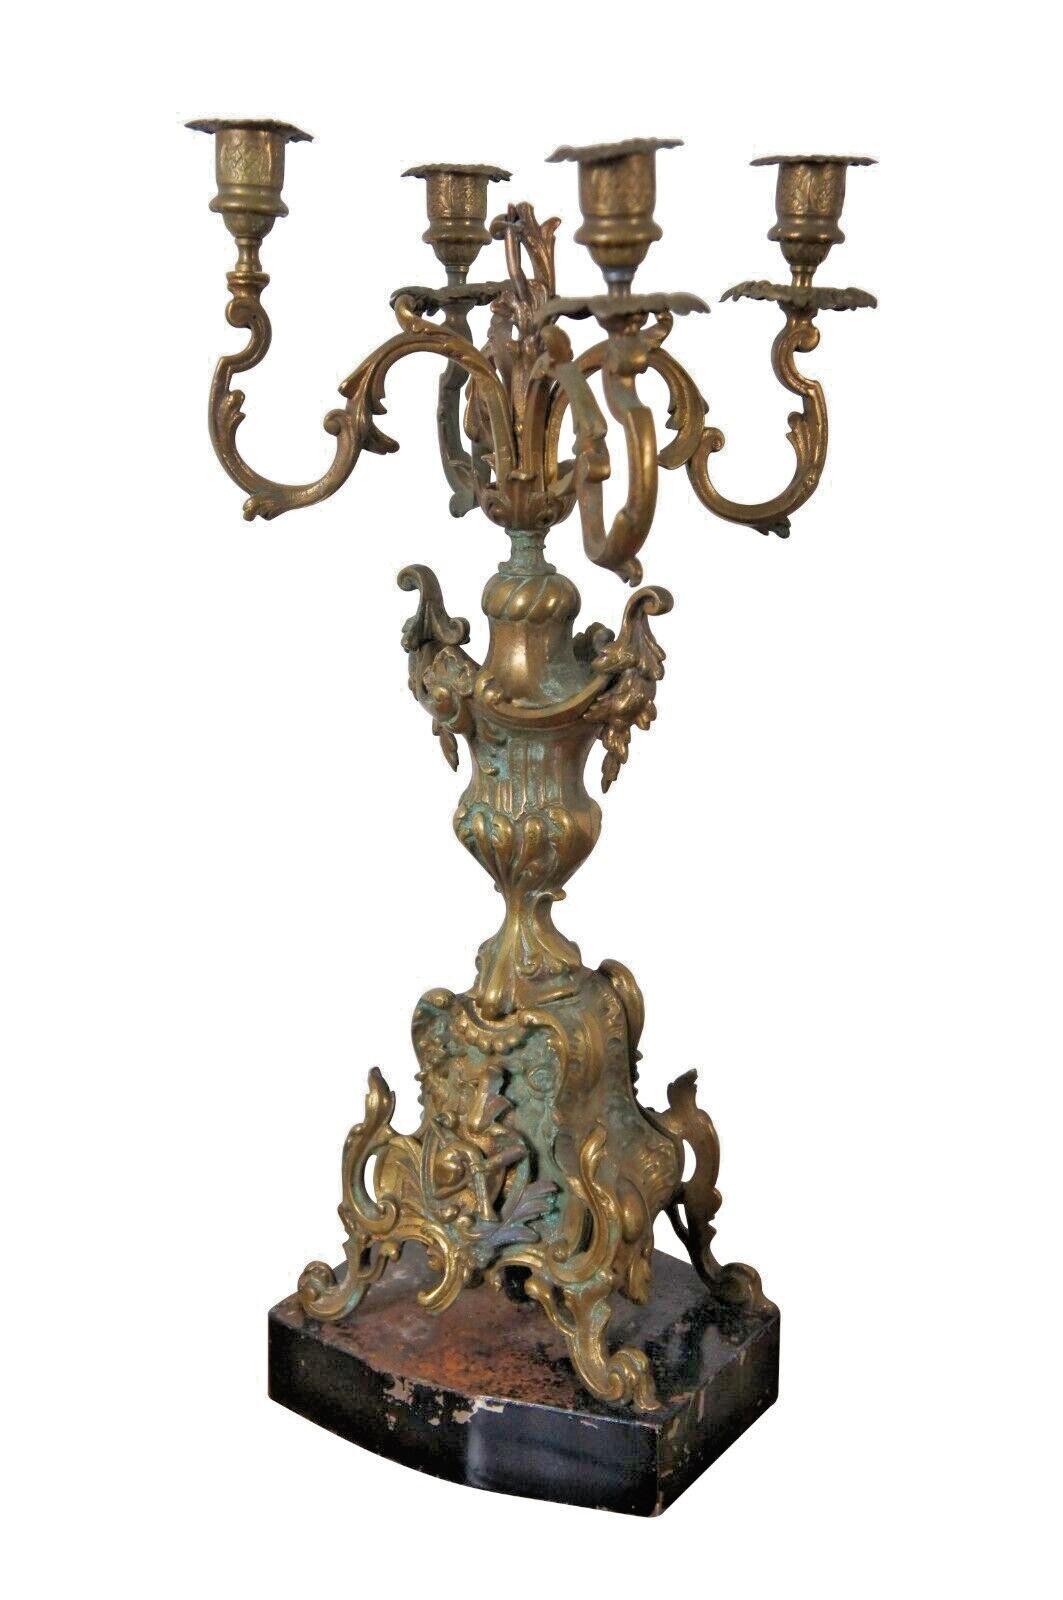 Paire de candélabres anciens en bronze de style baroque à quatre bras, montés sur des bases en métal peintes en noir et partiellement convertis pour l'électricité.

Dimensions :
10